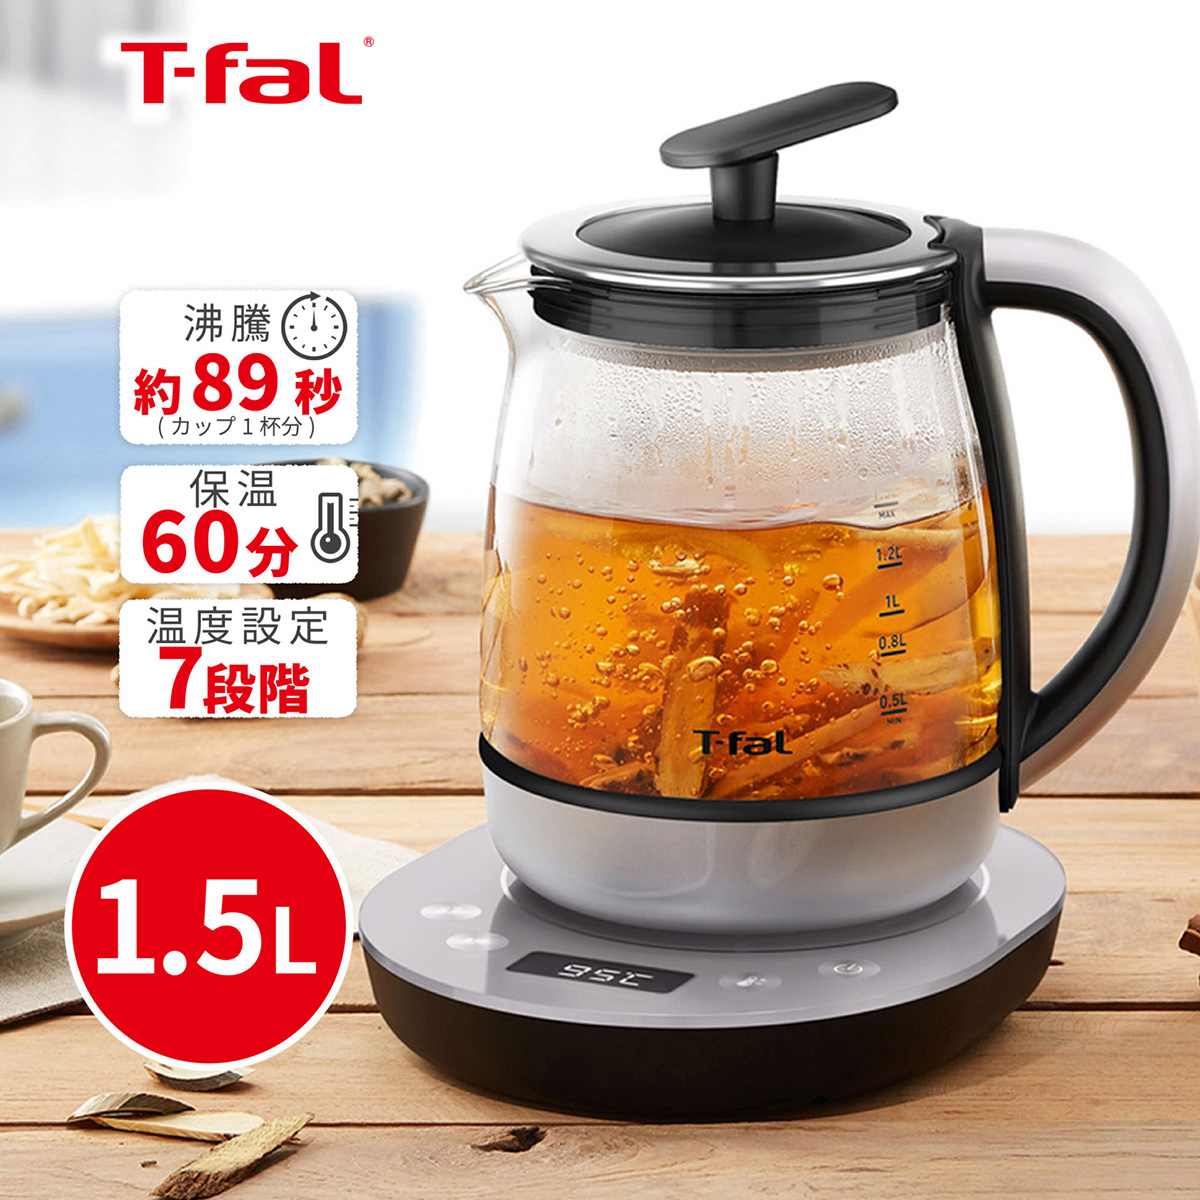 T-fal 電気ケトル 1.5L テイエール ハイパワー 茶こし付き 温度設定 煮出し可能